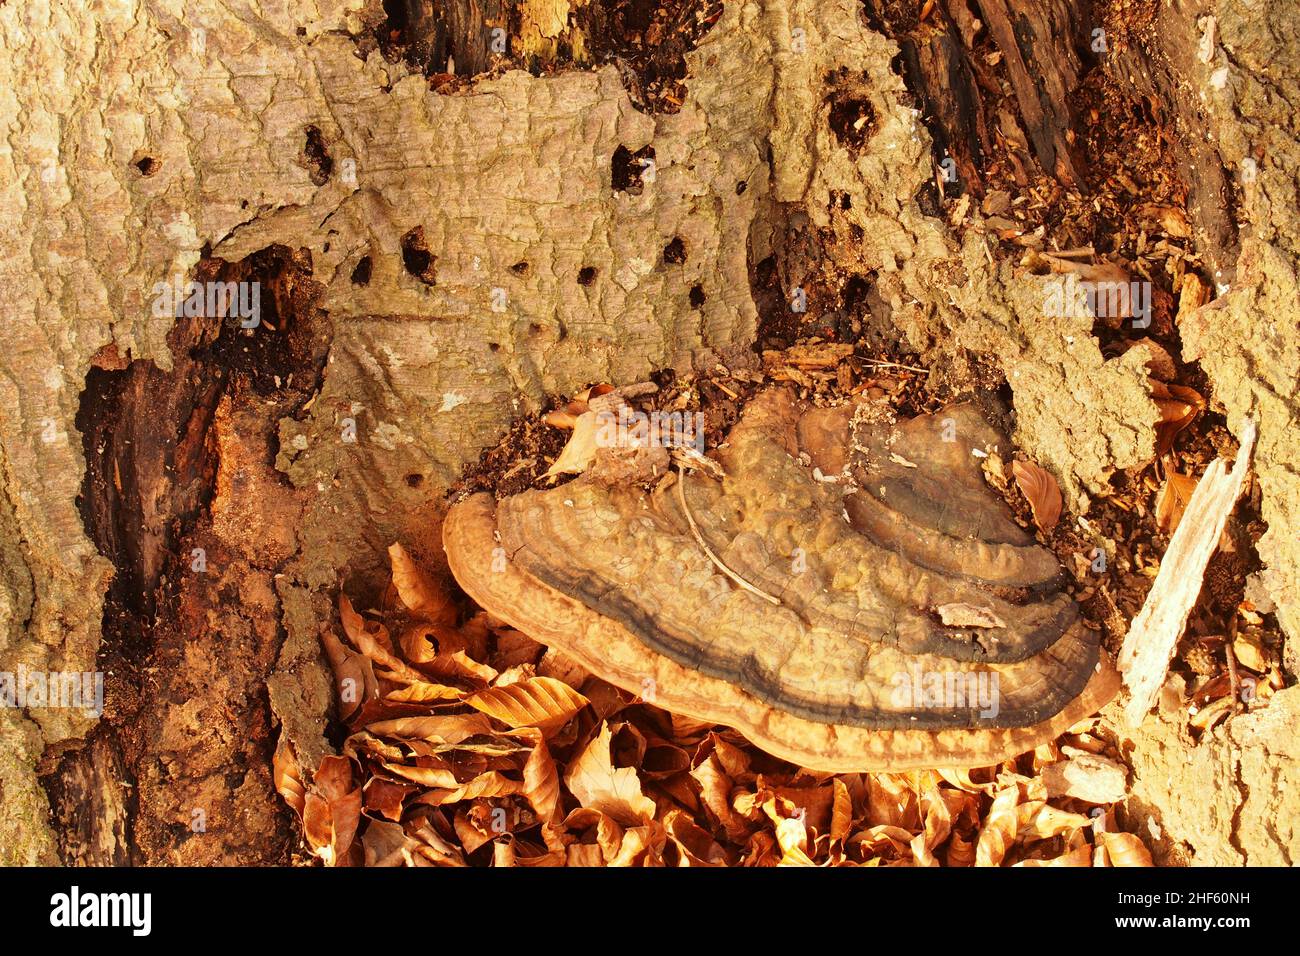 Un très vieux champignon de crochet au fond d'un ancien hêtre entouré par l'écorce d'arbre mort et des feuilles d'hiver dorées et tombées Banque D'Images